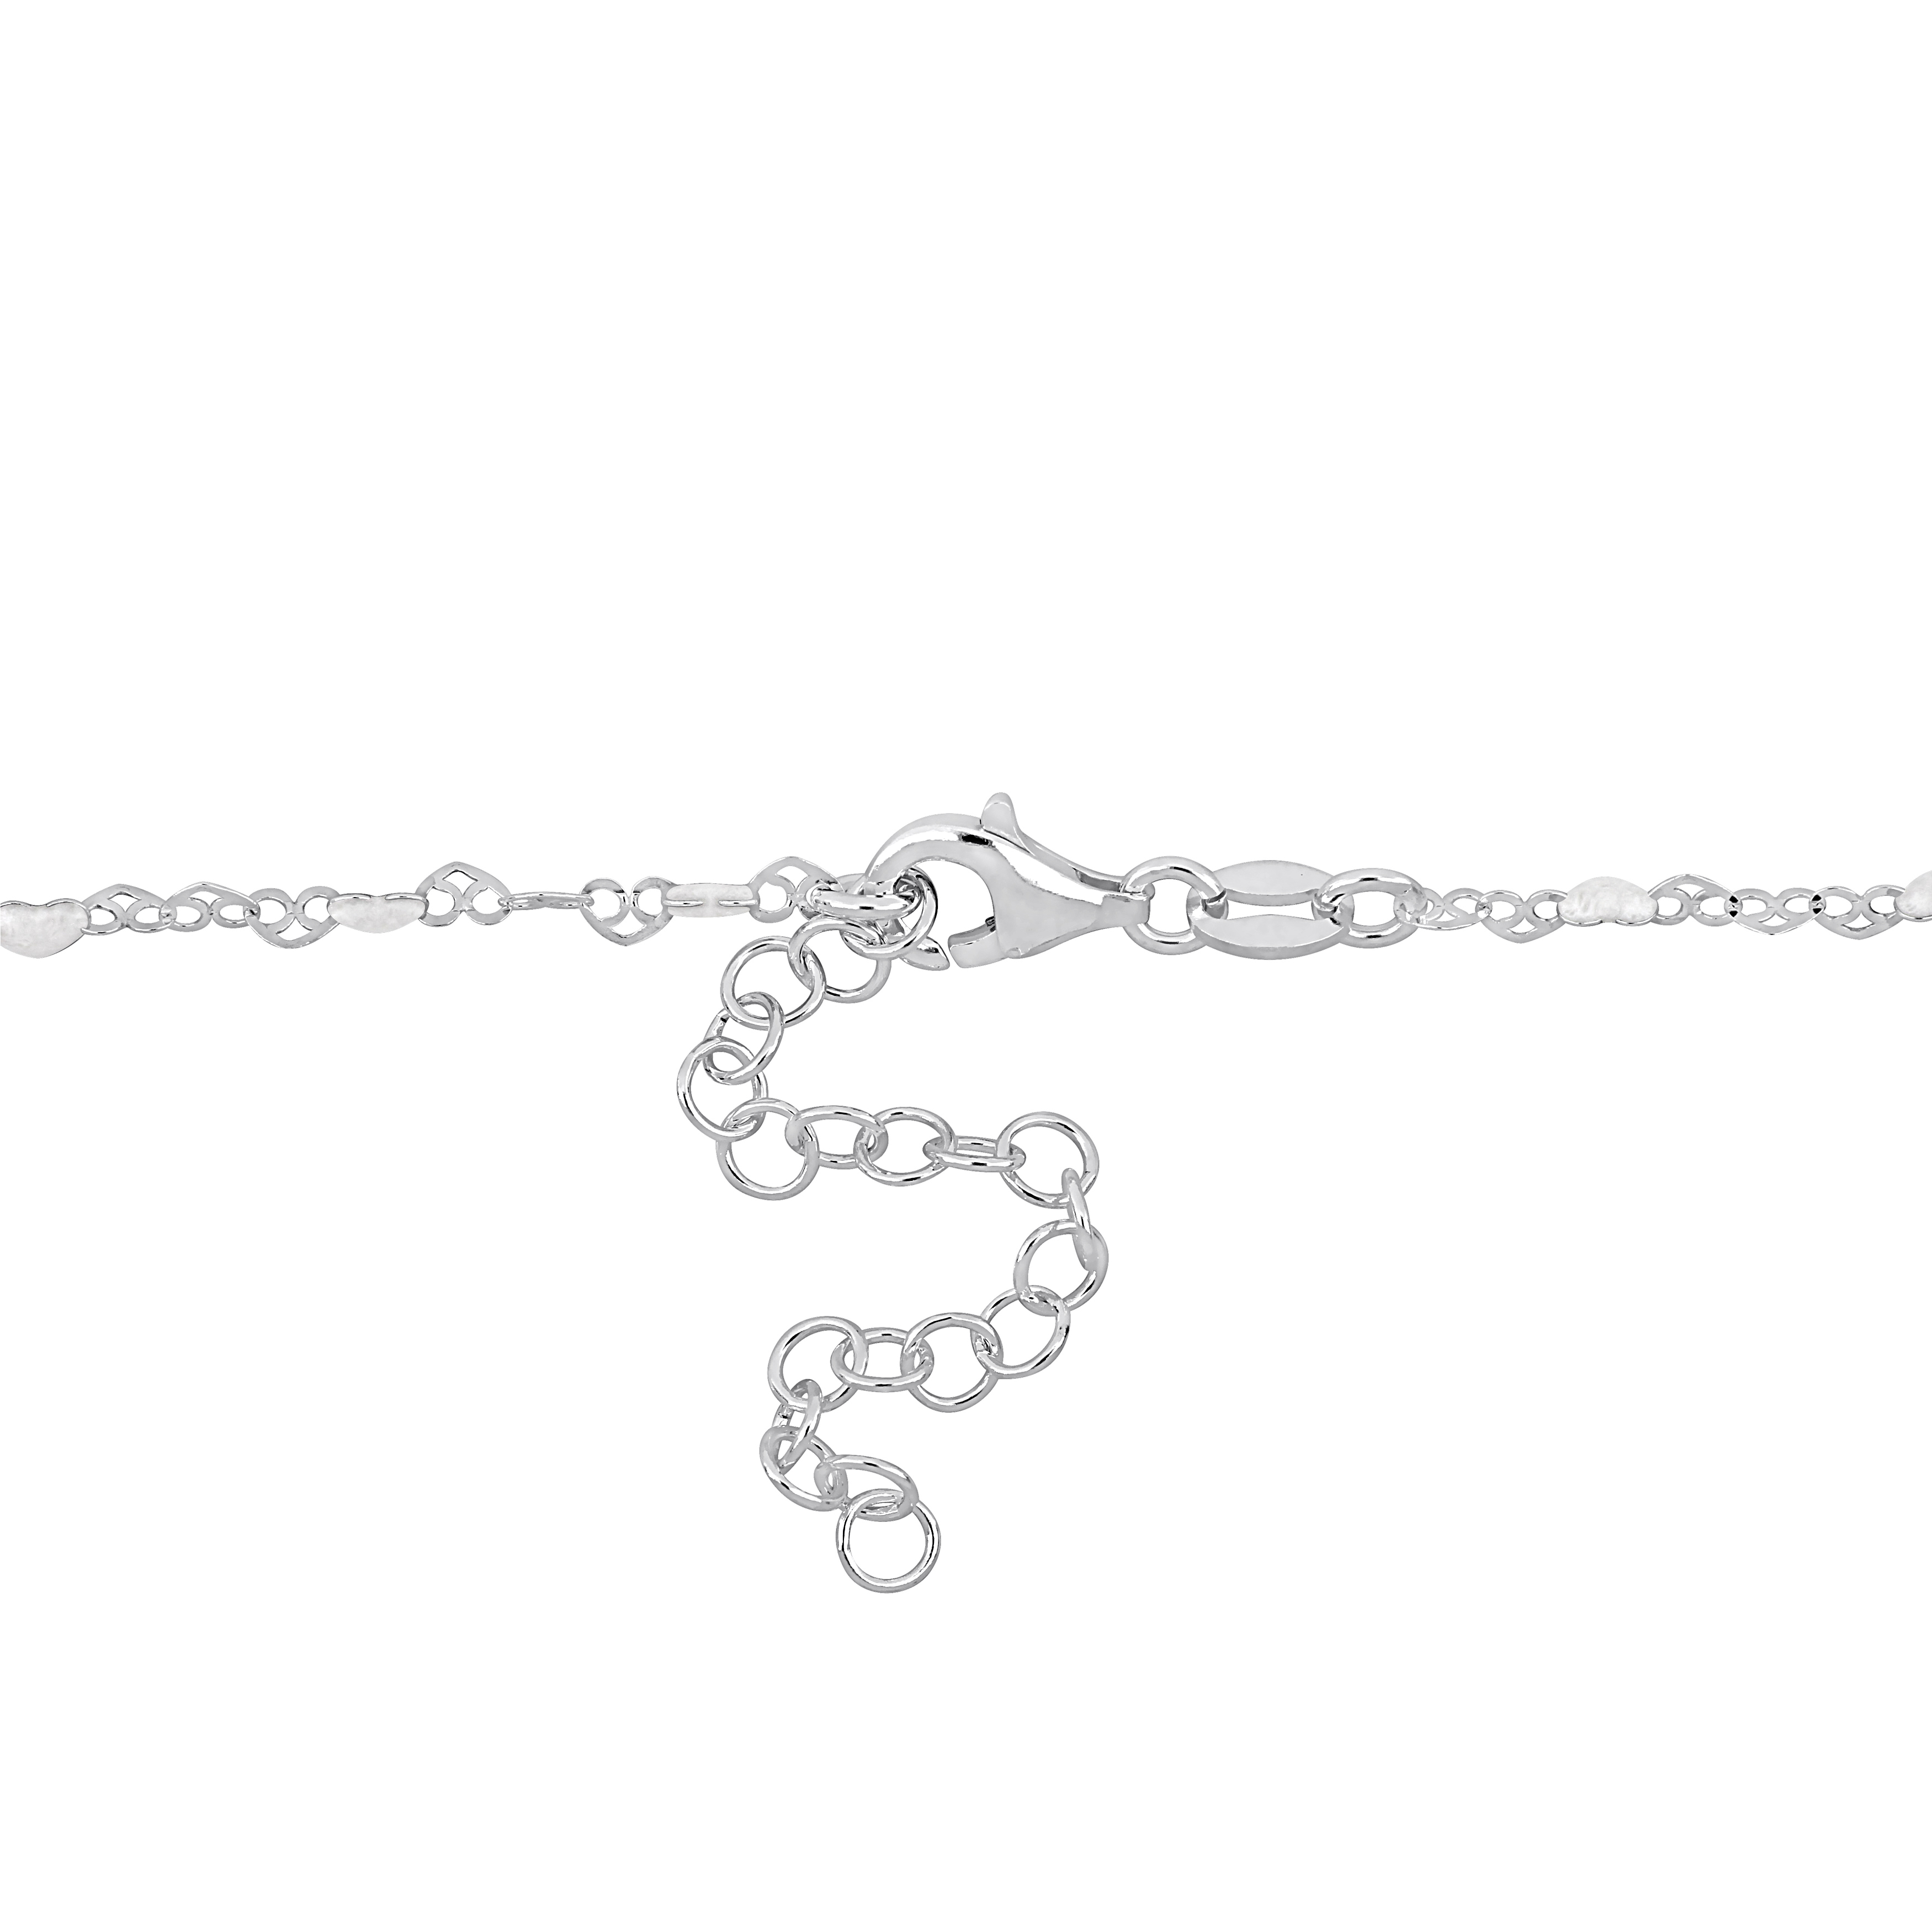 White Enamel Heart Link Necklace in Sterling Silver - 16 in.